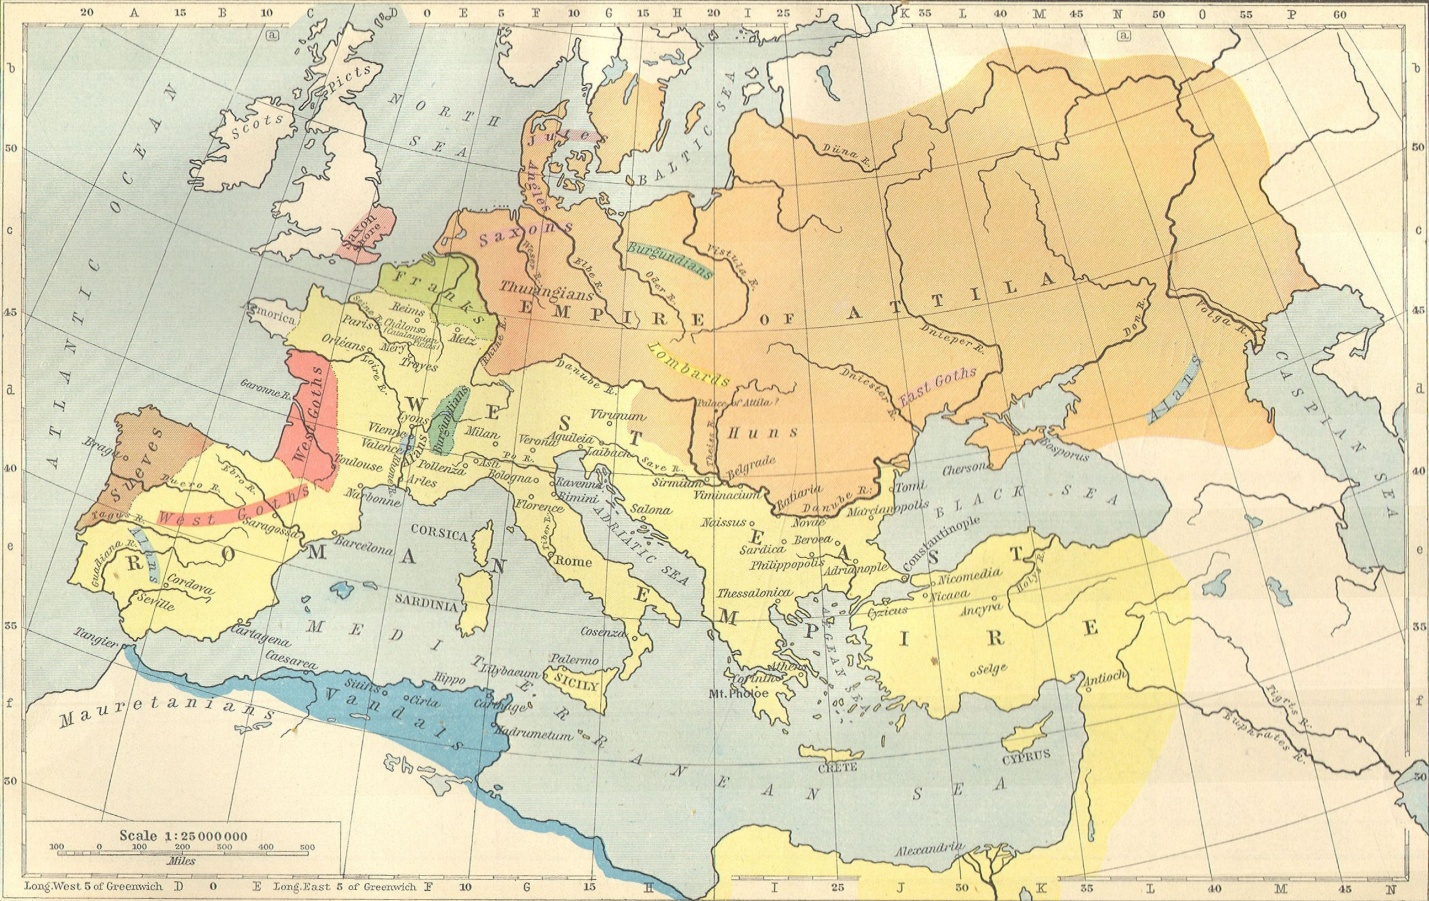  Так выглядит Европа в гуннский период по мнению западных историков